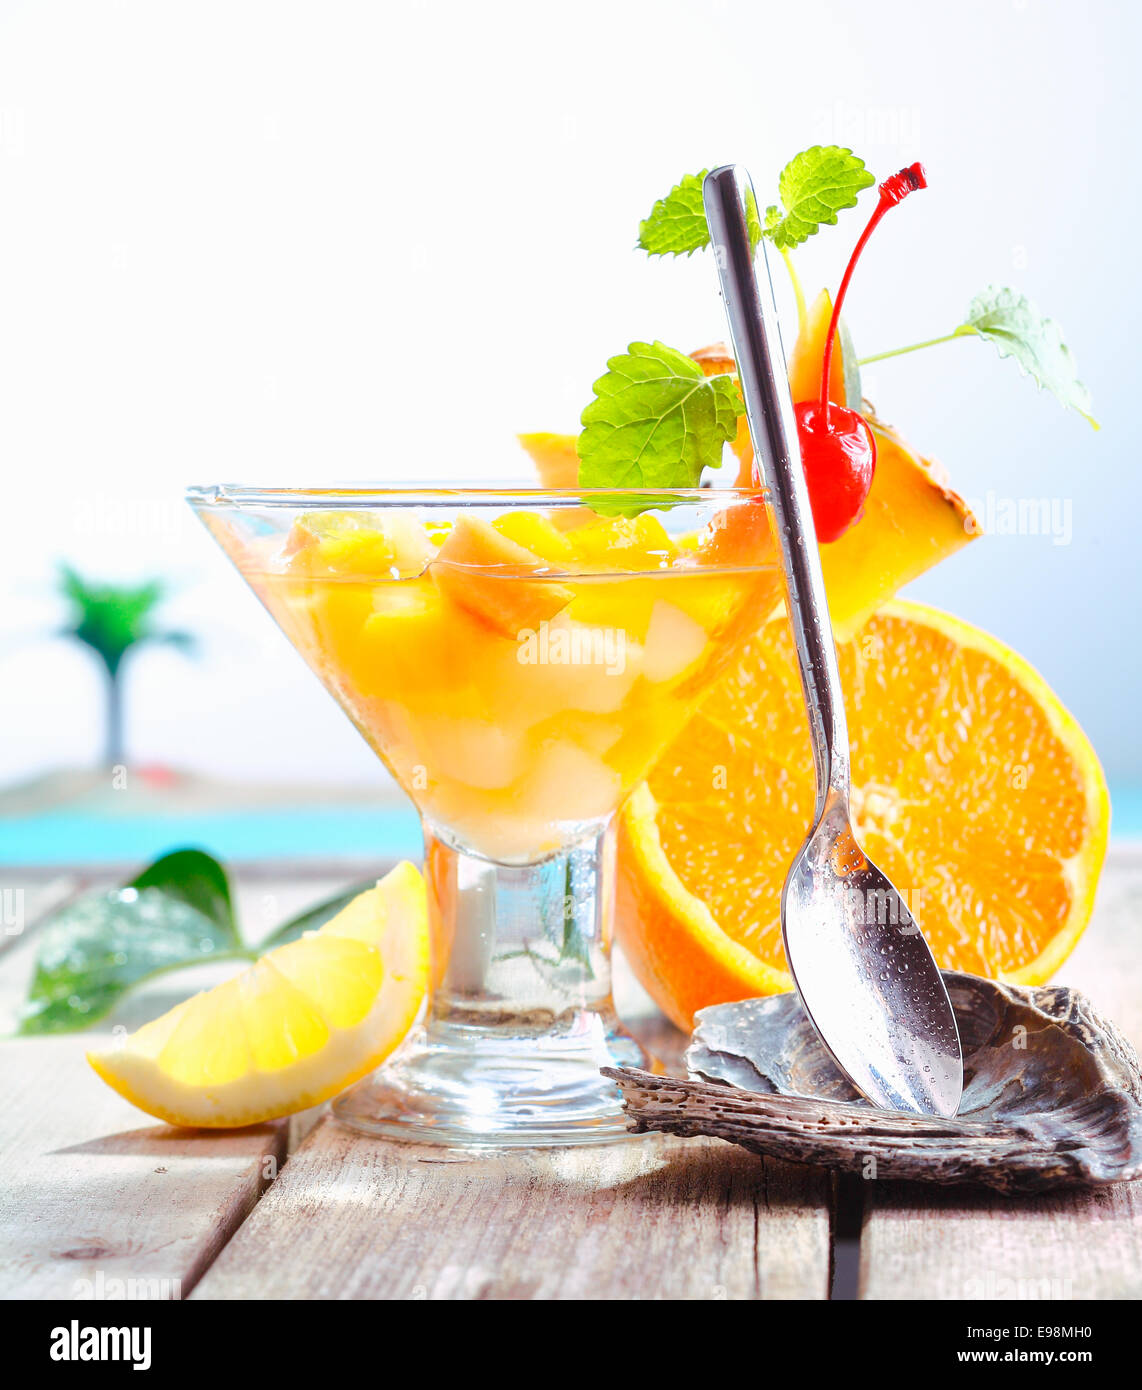 Colorati frutti esotici cocktail di fresca frutta tropicale presentato con un cucchiaio in una posizione di riposo in corrispondenza di una sistemazione di resort Foto Stock